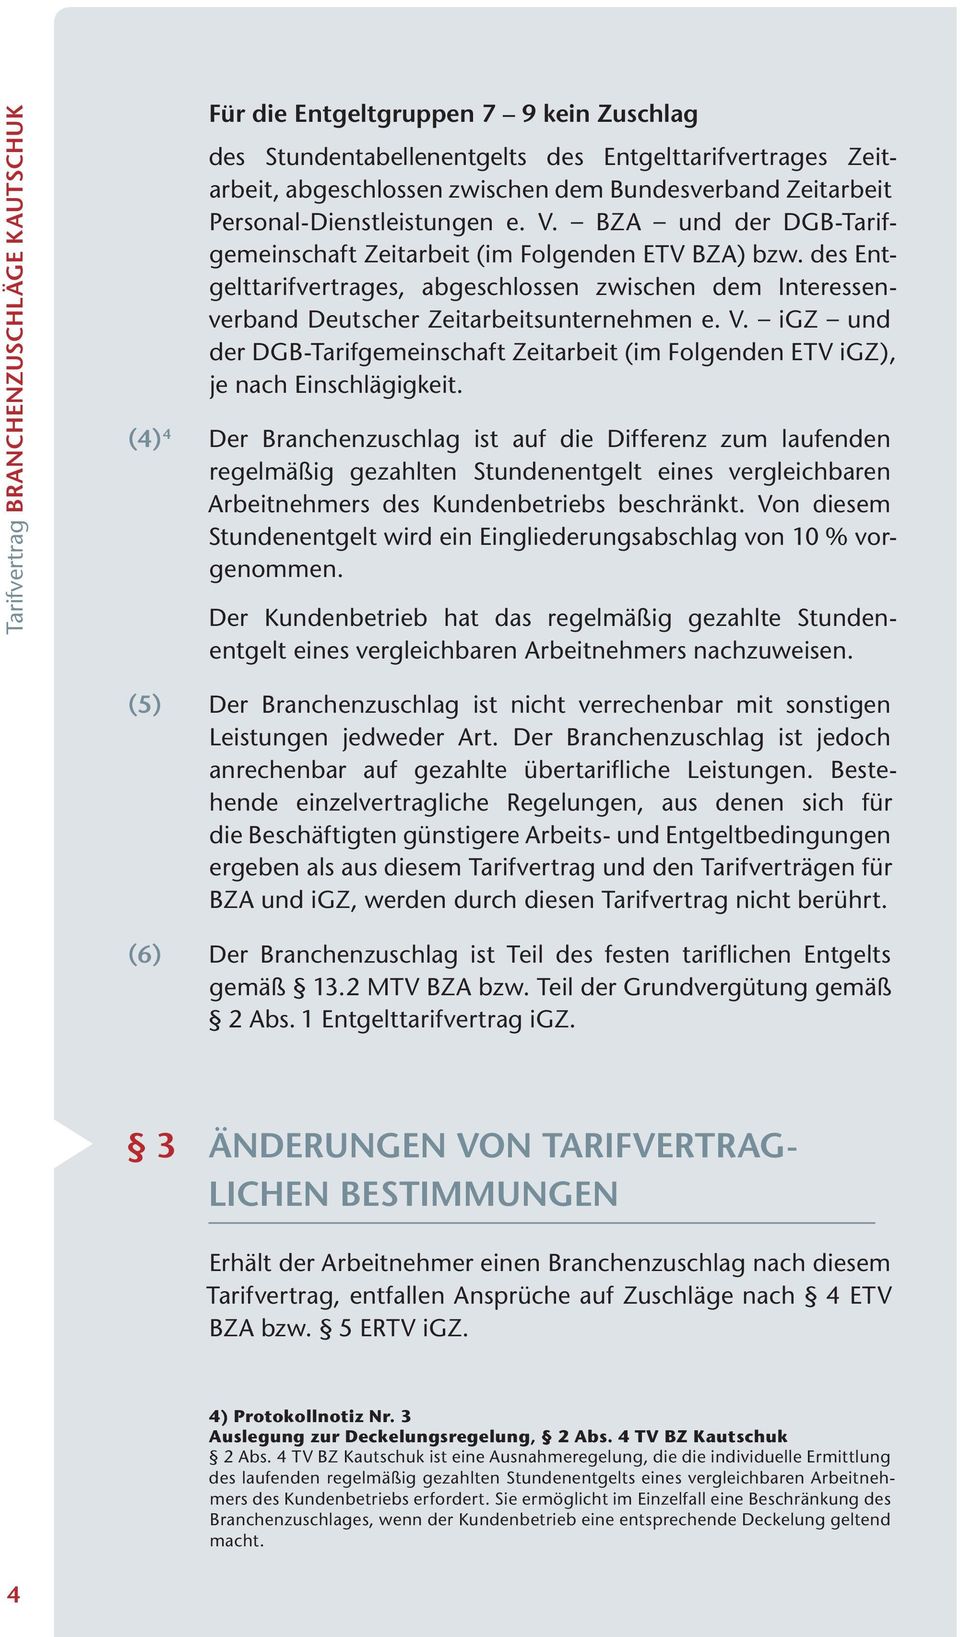 des Entgelttarifvertrages, abgeschlossen zwischen dem Interessenverband Deutscher Zeitarbeitsunternehmen e. V. igz und der DGB-Tarifgemeinschaft Zeitarbeit (im Folgenden ETV igz), je Einschlägigkeit.